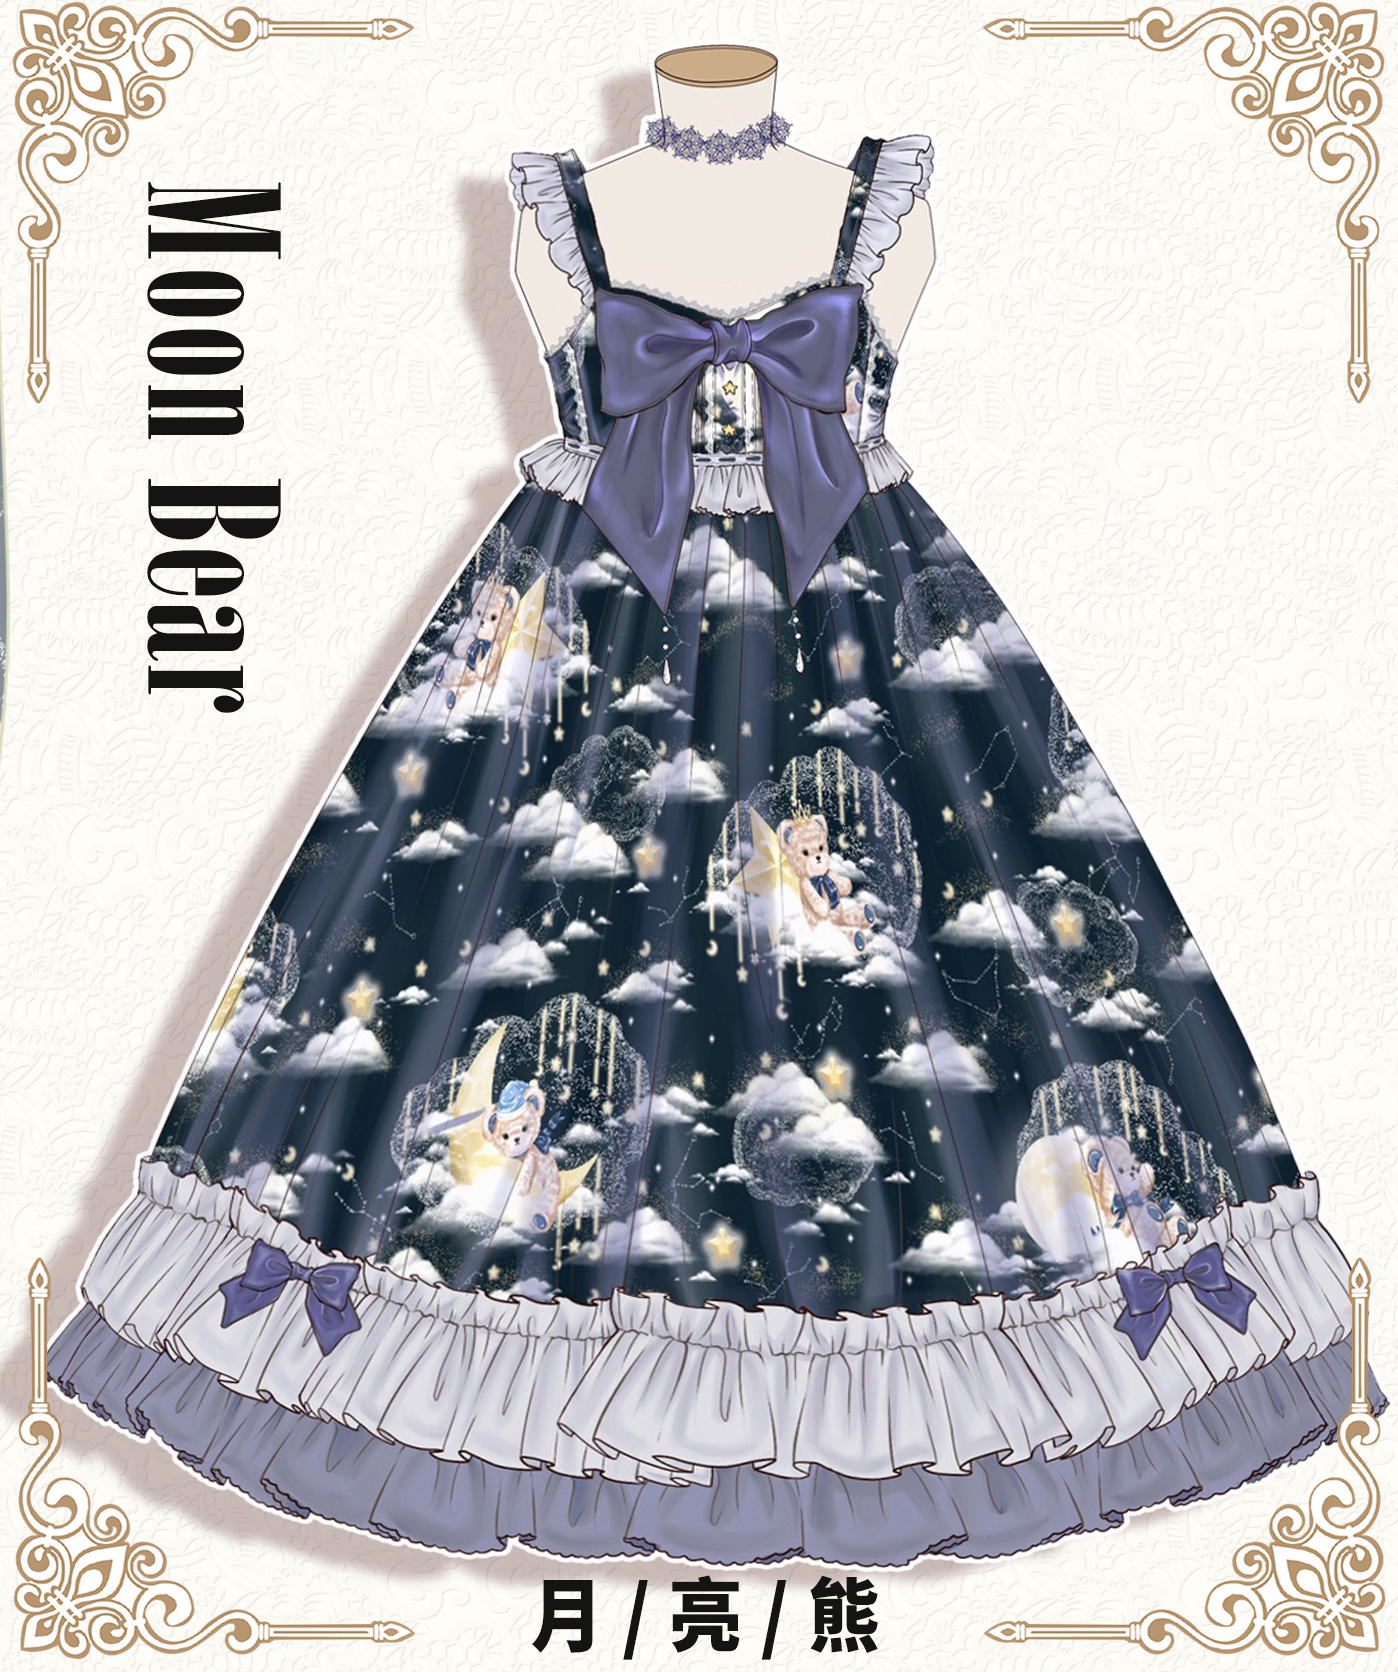 【喜欢请收藏】原创独家设计正版月亮熊 lolita夏季日常jsk连衣裙